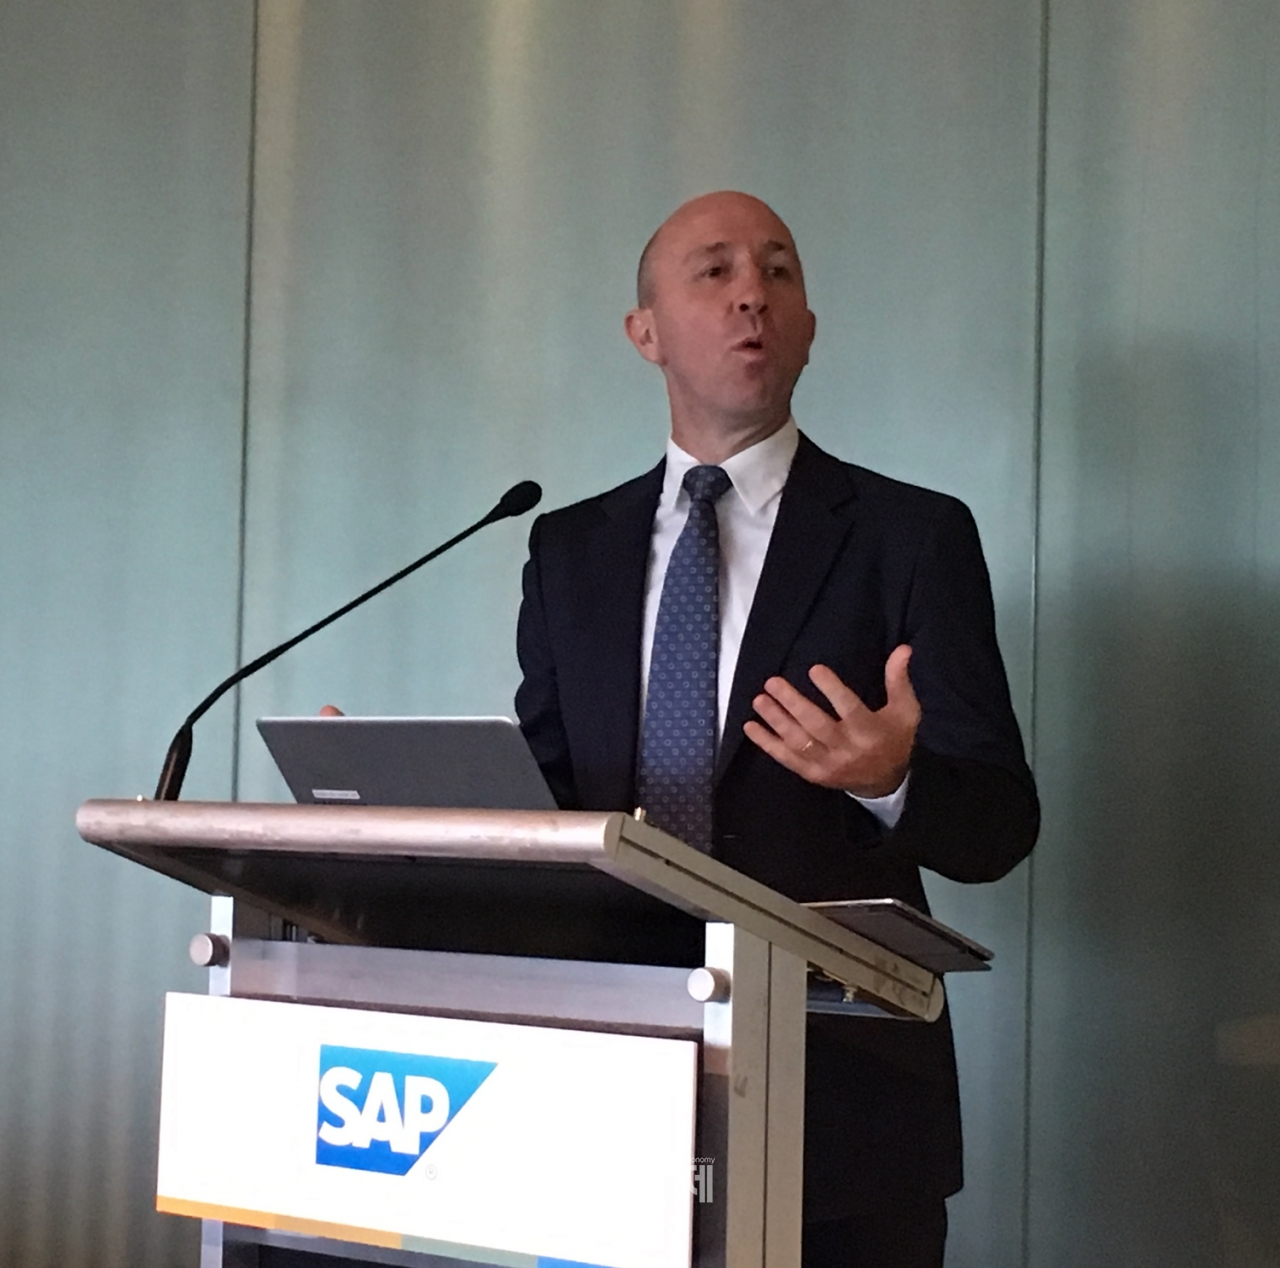 스콧 러셀 SAP 아태지역 회장이 21일 서울 강남구 삼성동 파크하얏트호텔에서 열린 SAP 인텔리전트 엔터프라이즈 전략 발표 기자간담회에서 발표를 하고 있다.